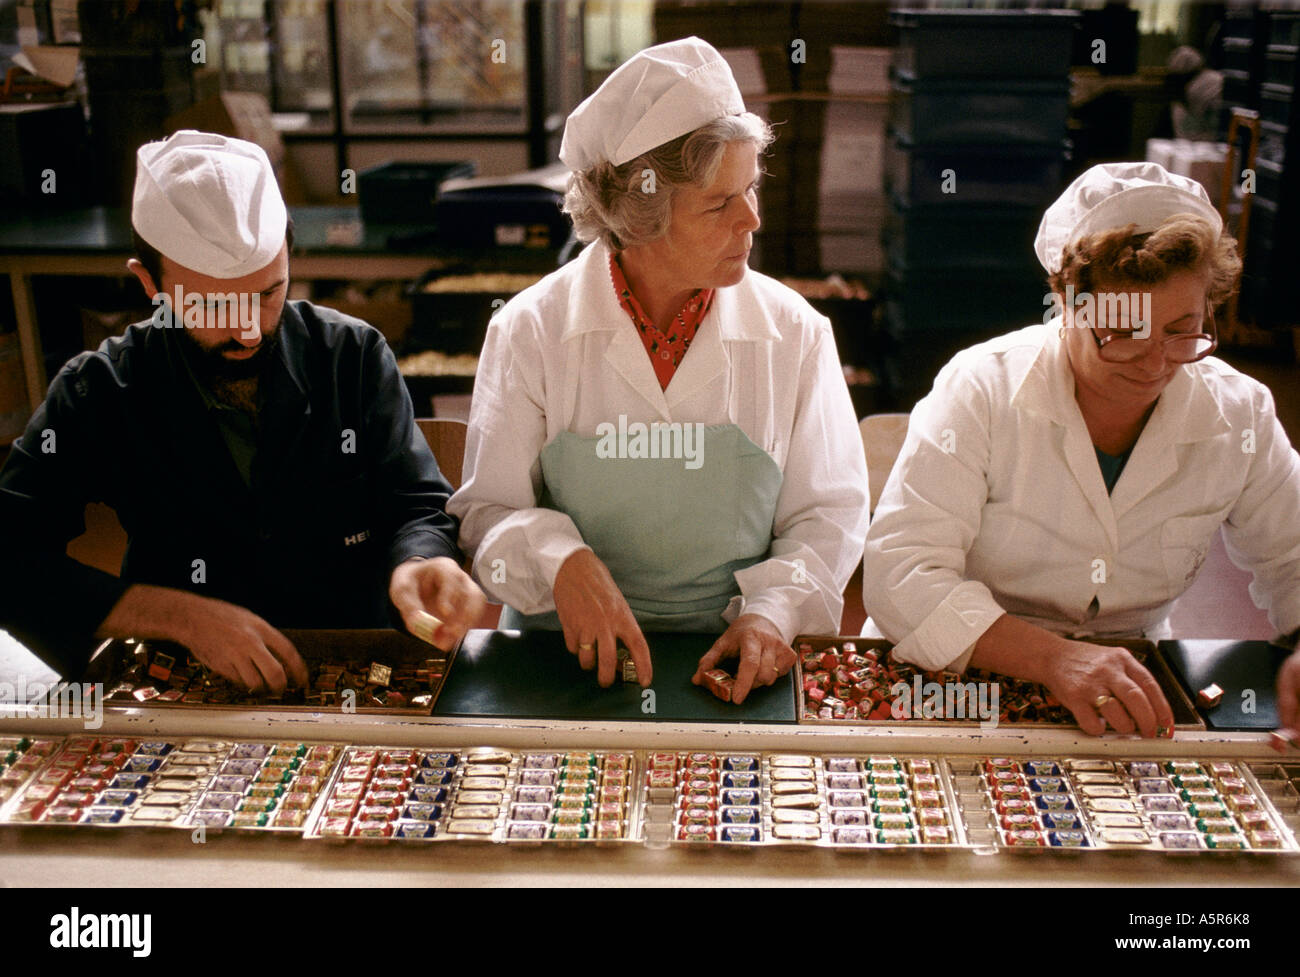 Mujer hombres trabajando de correa transportadora CAFFAREL ENVASES CHOCOLATES LUSERNA SAN GIOVANNI Foto de stock